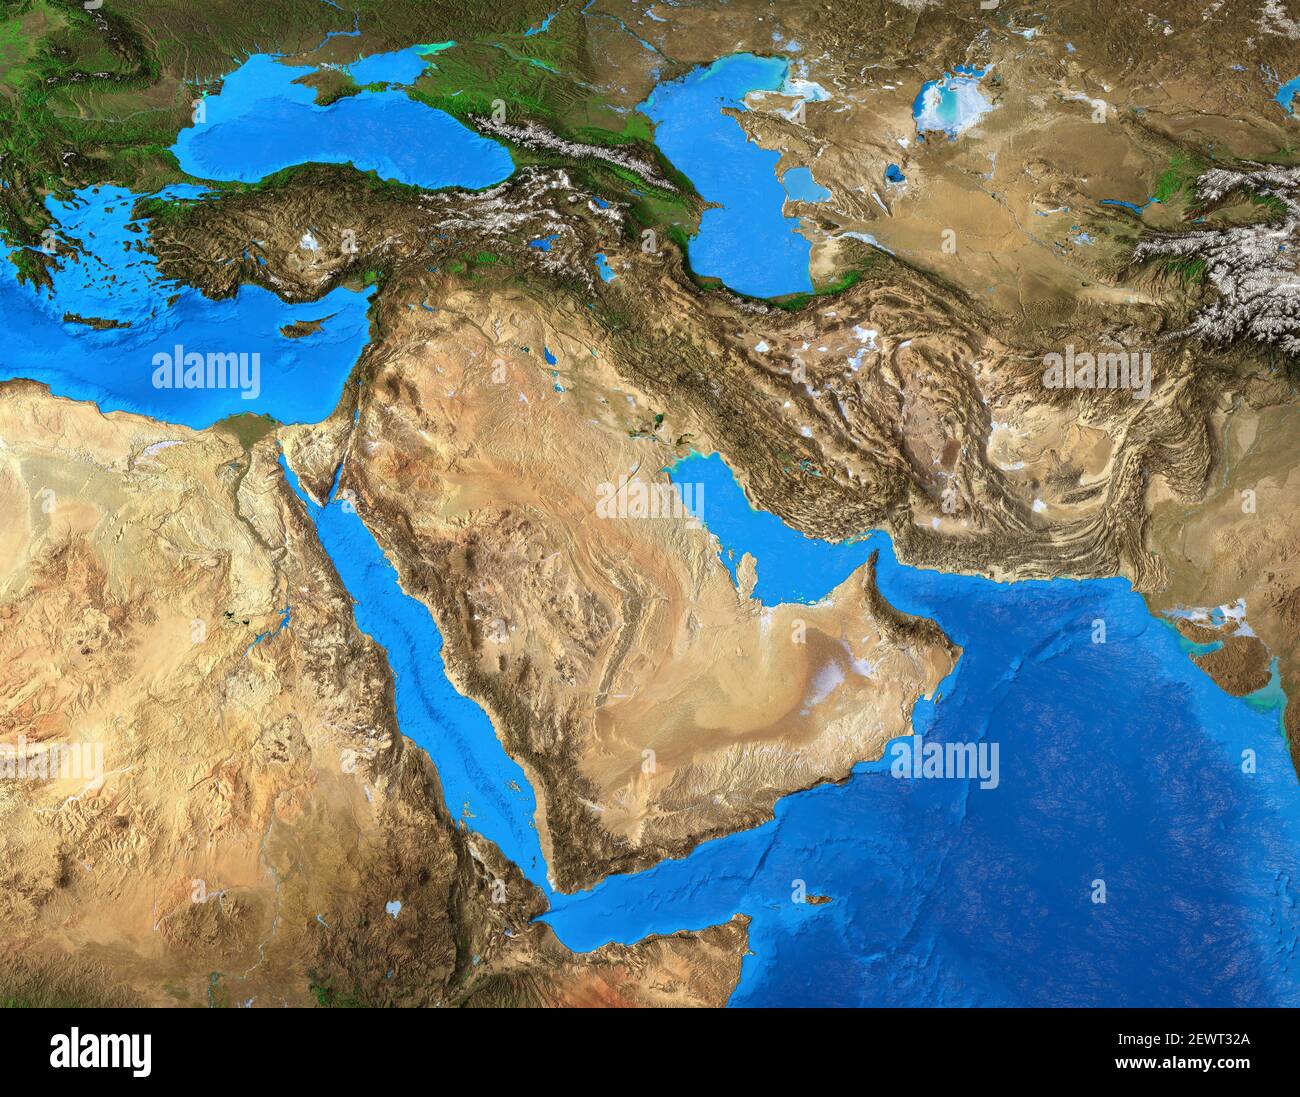 Mappa fisica del Medio Oriente. Geografia della Penisola arabica. Vista in piano del pianeta Terra e delle sue forme - elementi arredati dalla NASA Foto Stock